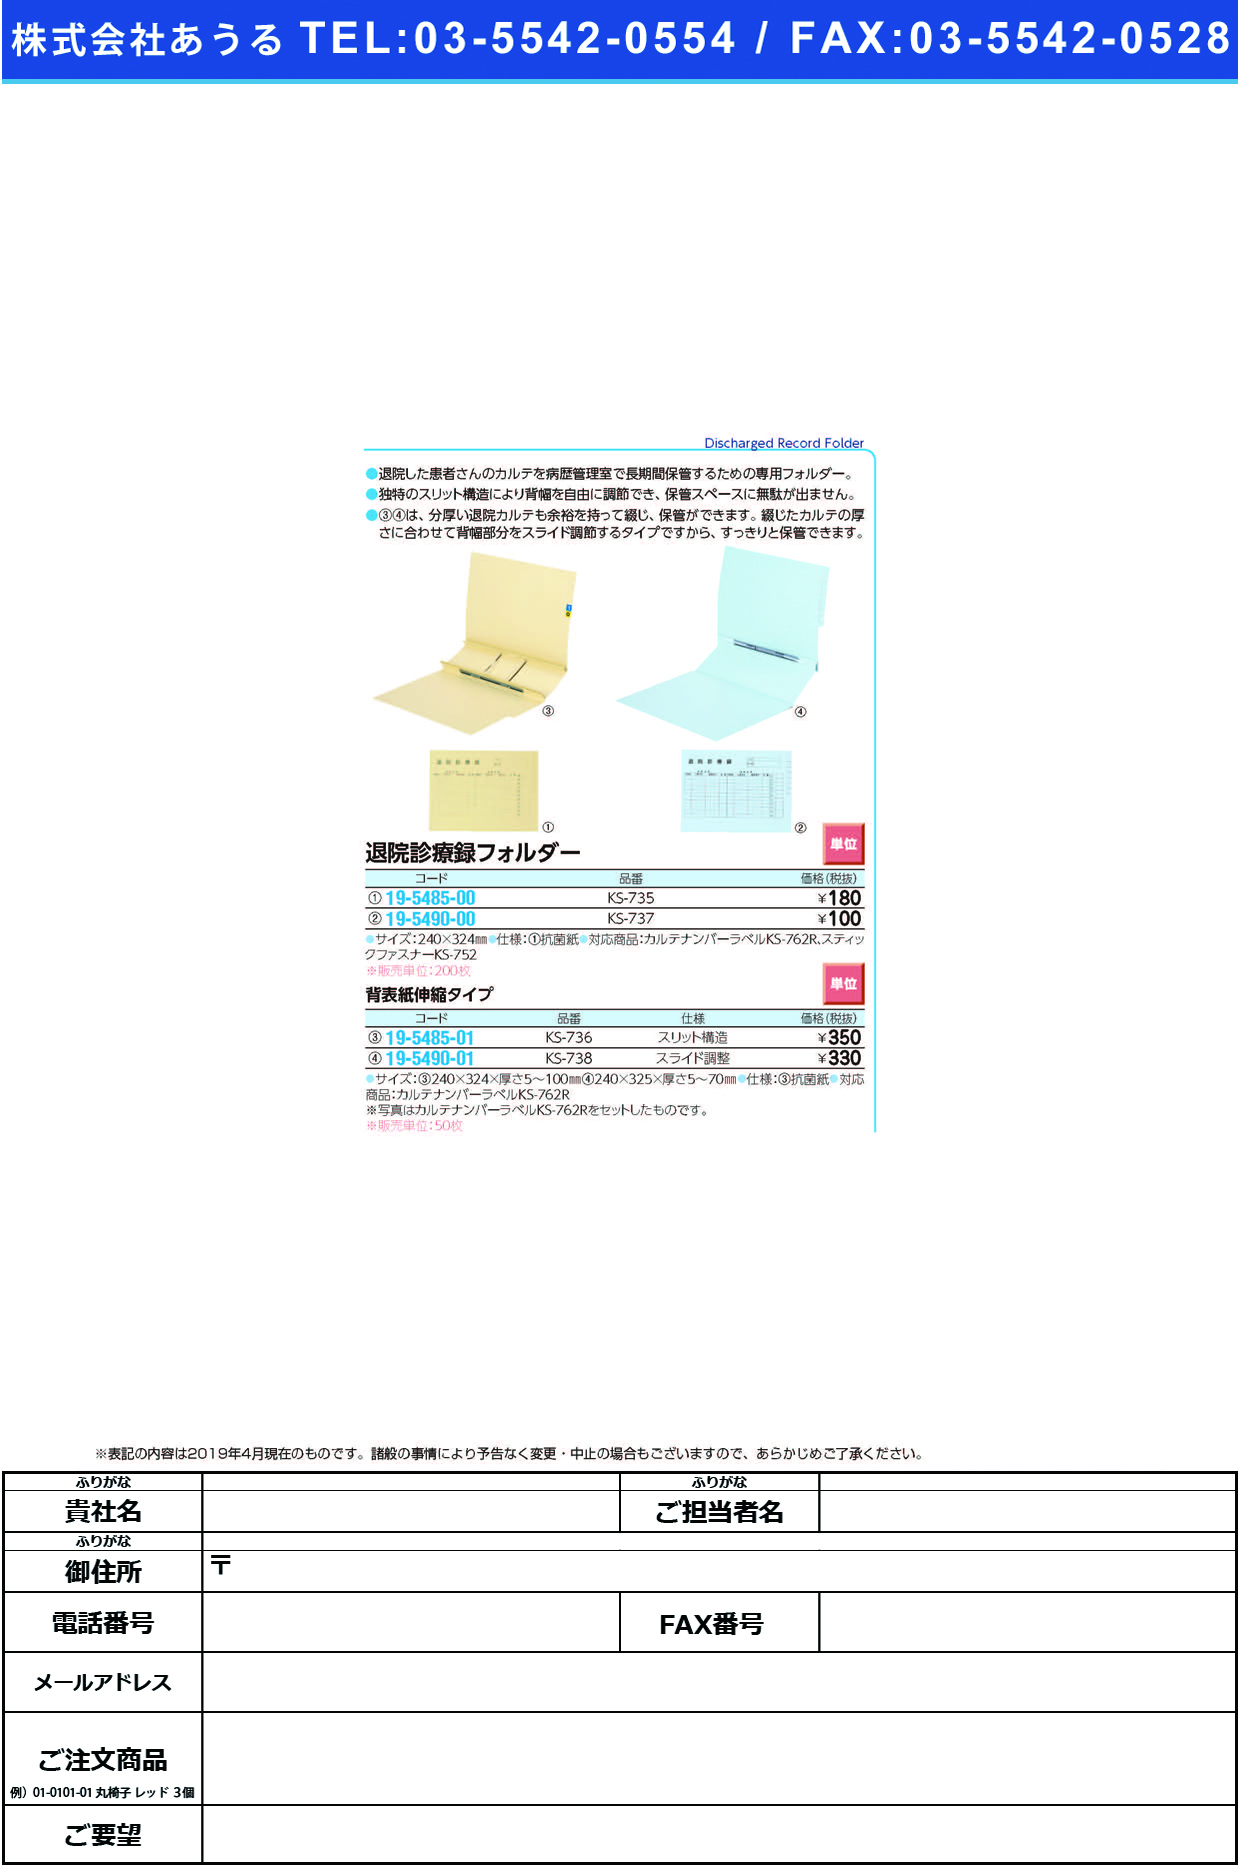 (19-5490-00)退院診療録フォルダー KS-737 ﾀｲｲﾝｼﾝﾘｮｳﾛｸﾌｫﾙﾀﾞｰ(ケルン)【200枚単位】【2019年カタログ商品】